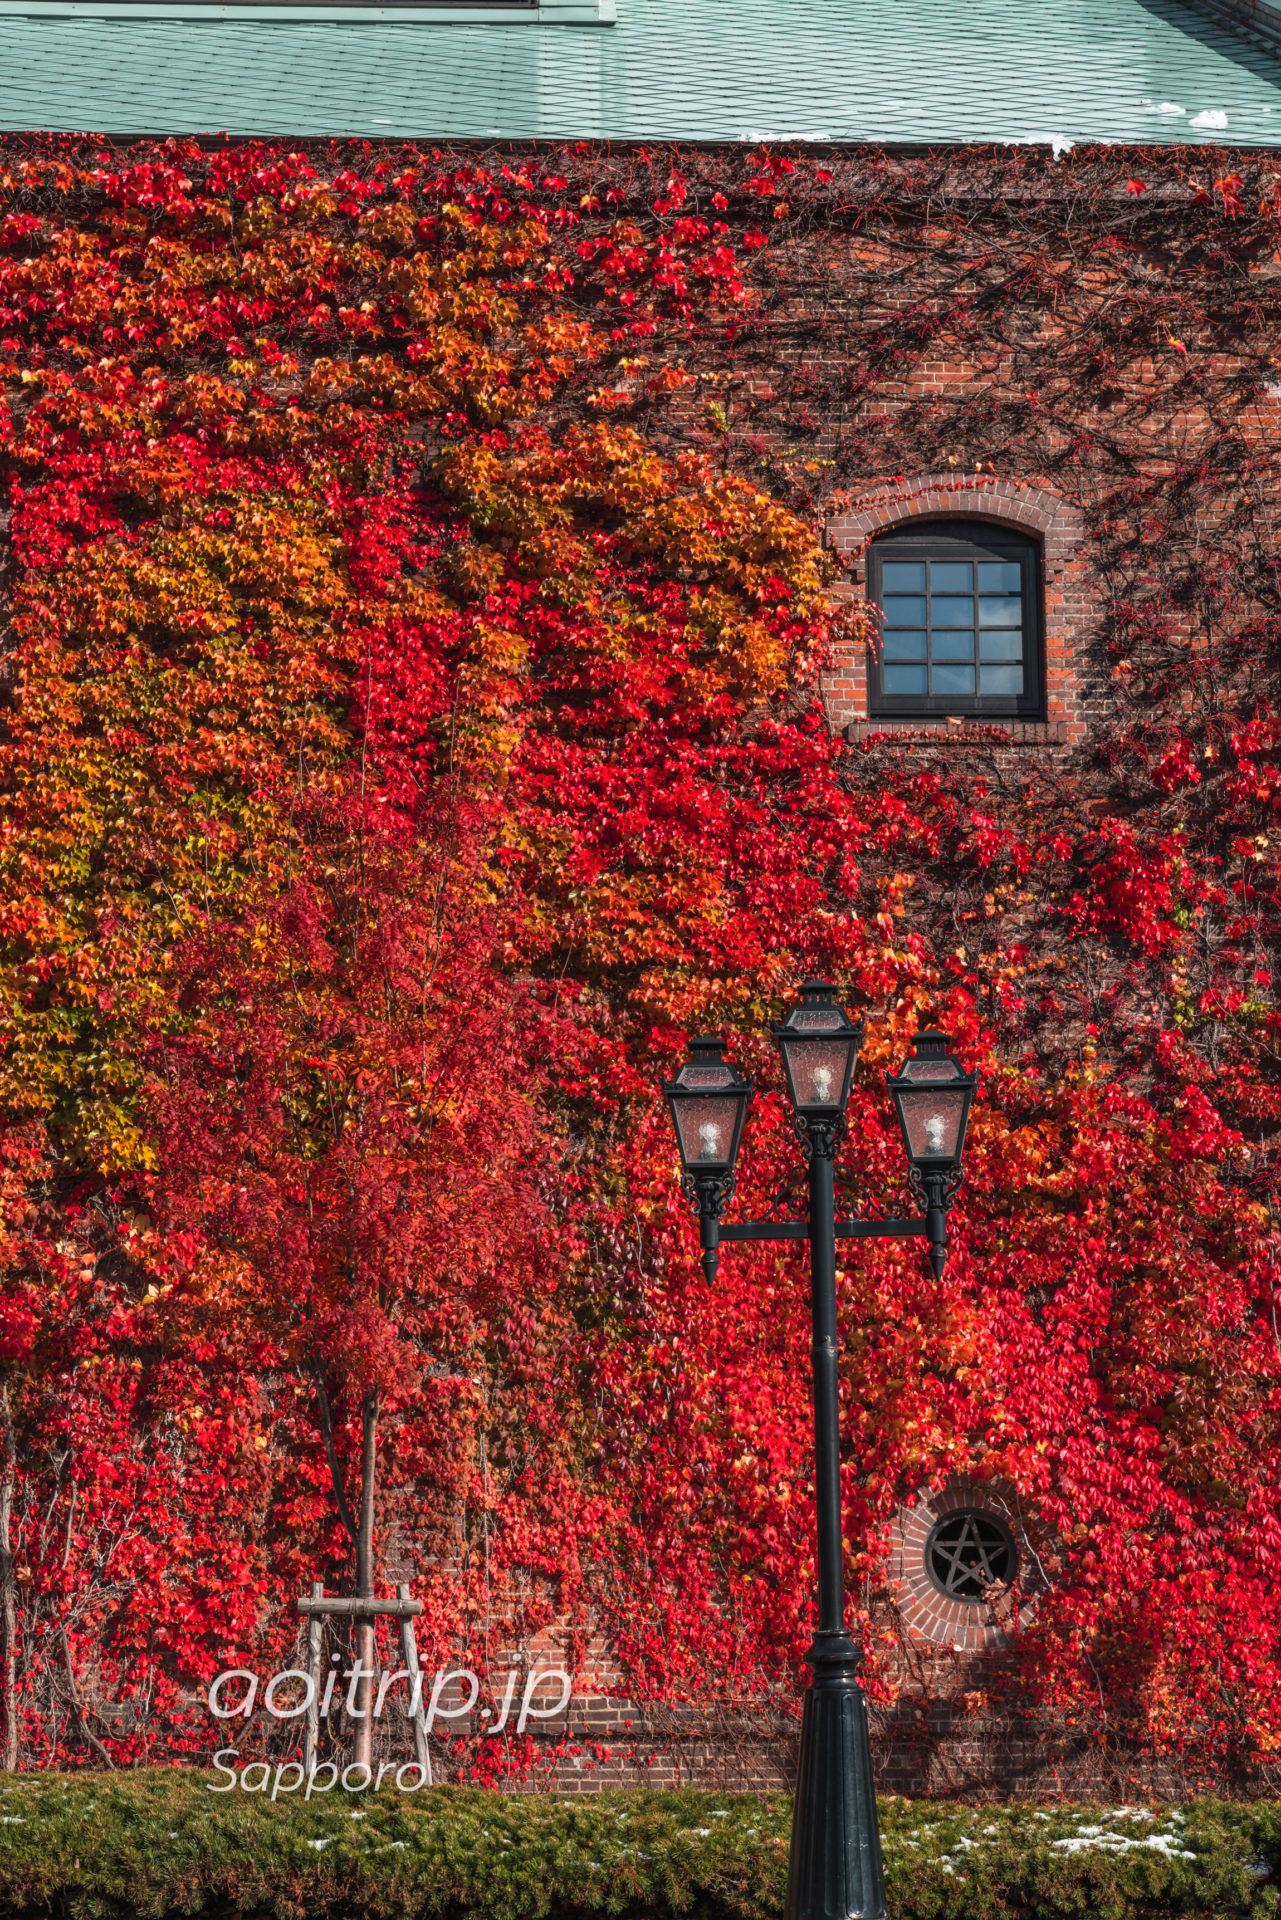 蔦紅葉が美しい秋のサッポロファクトリー赤煉瓦館｜Sapporo Factory